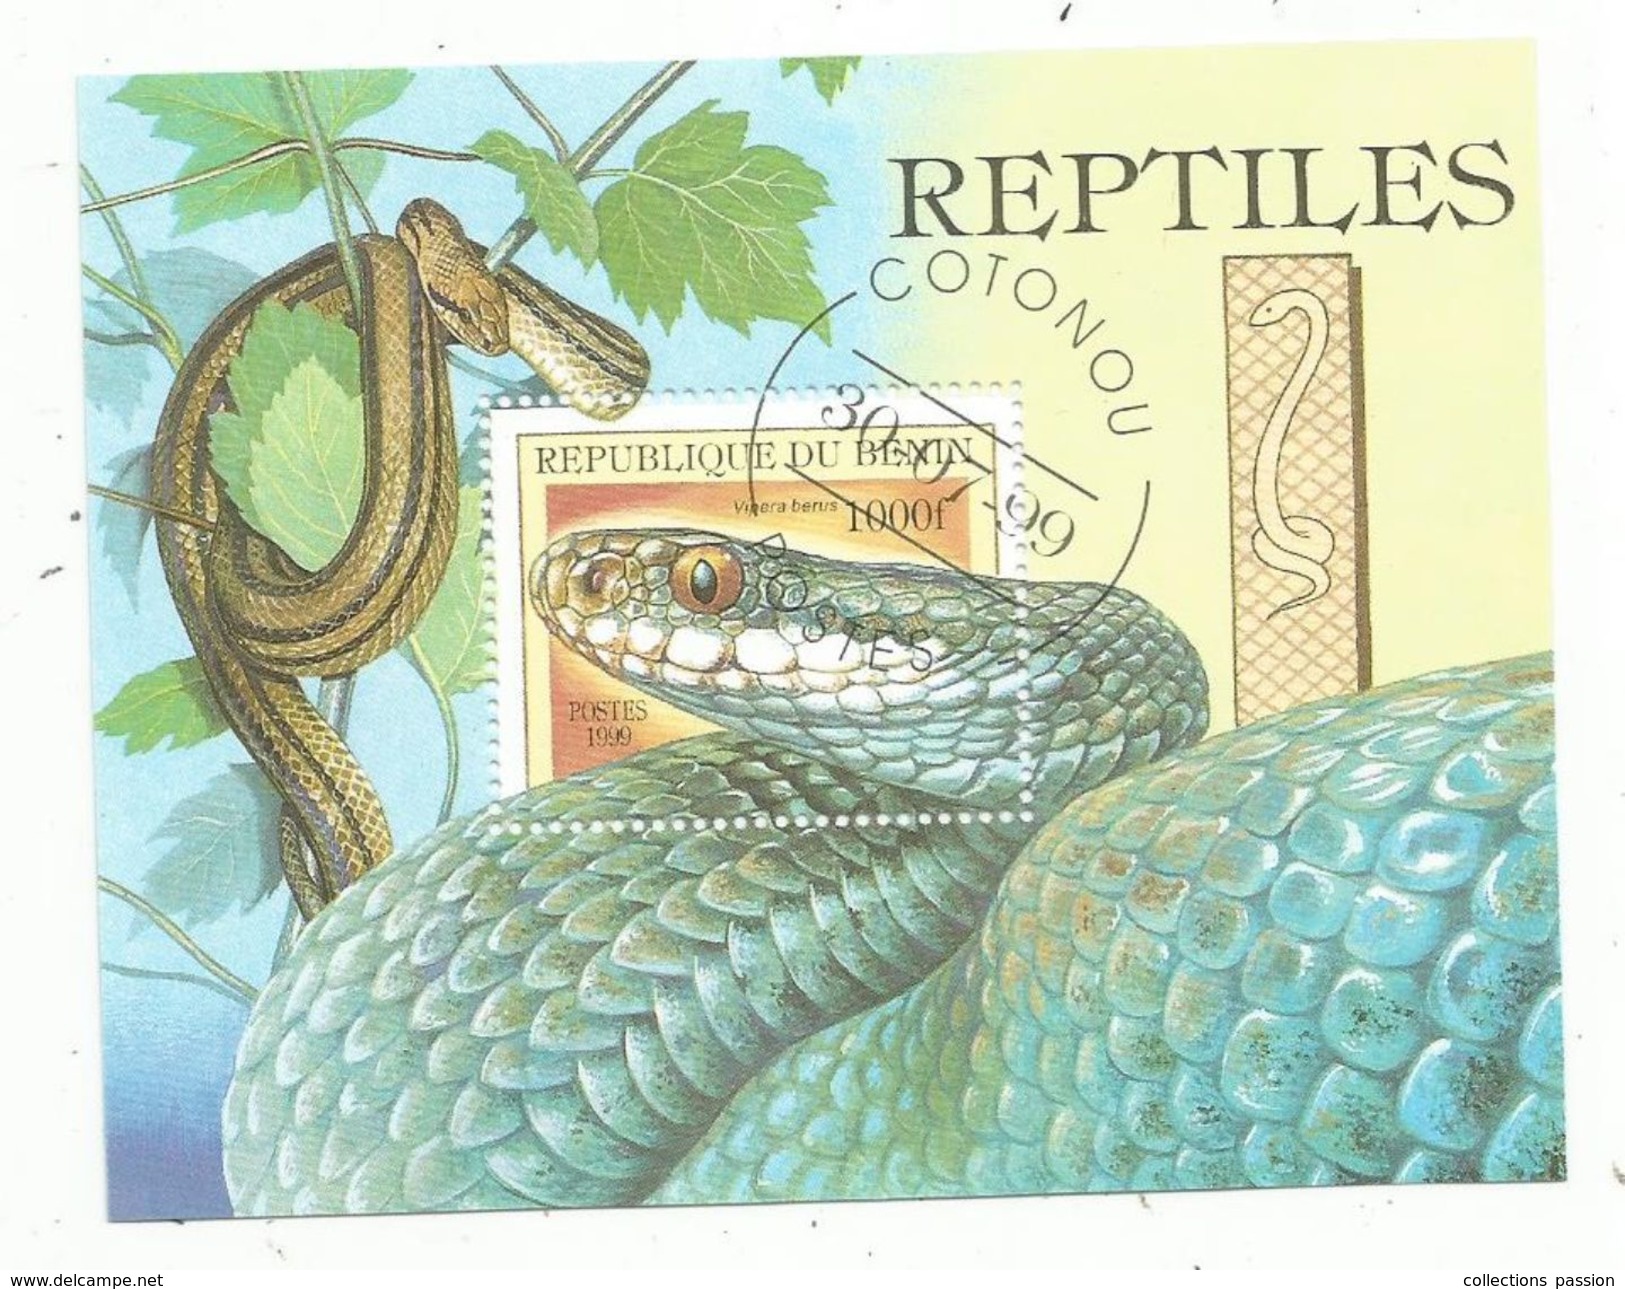 Timbre , REPTILES , Serpents , REPUBLIQUE DU BENIN , 1000f , Cotonou , 1999 , Vipera Berus - Serpents